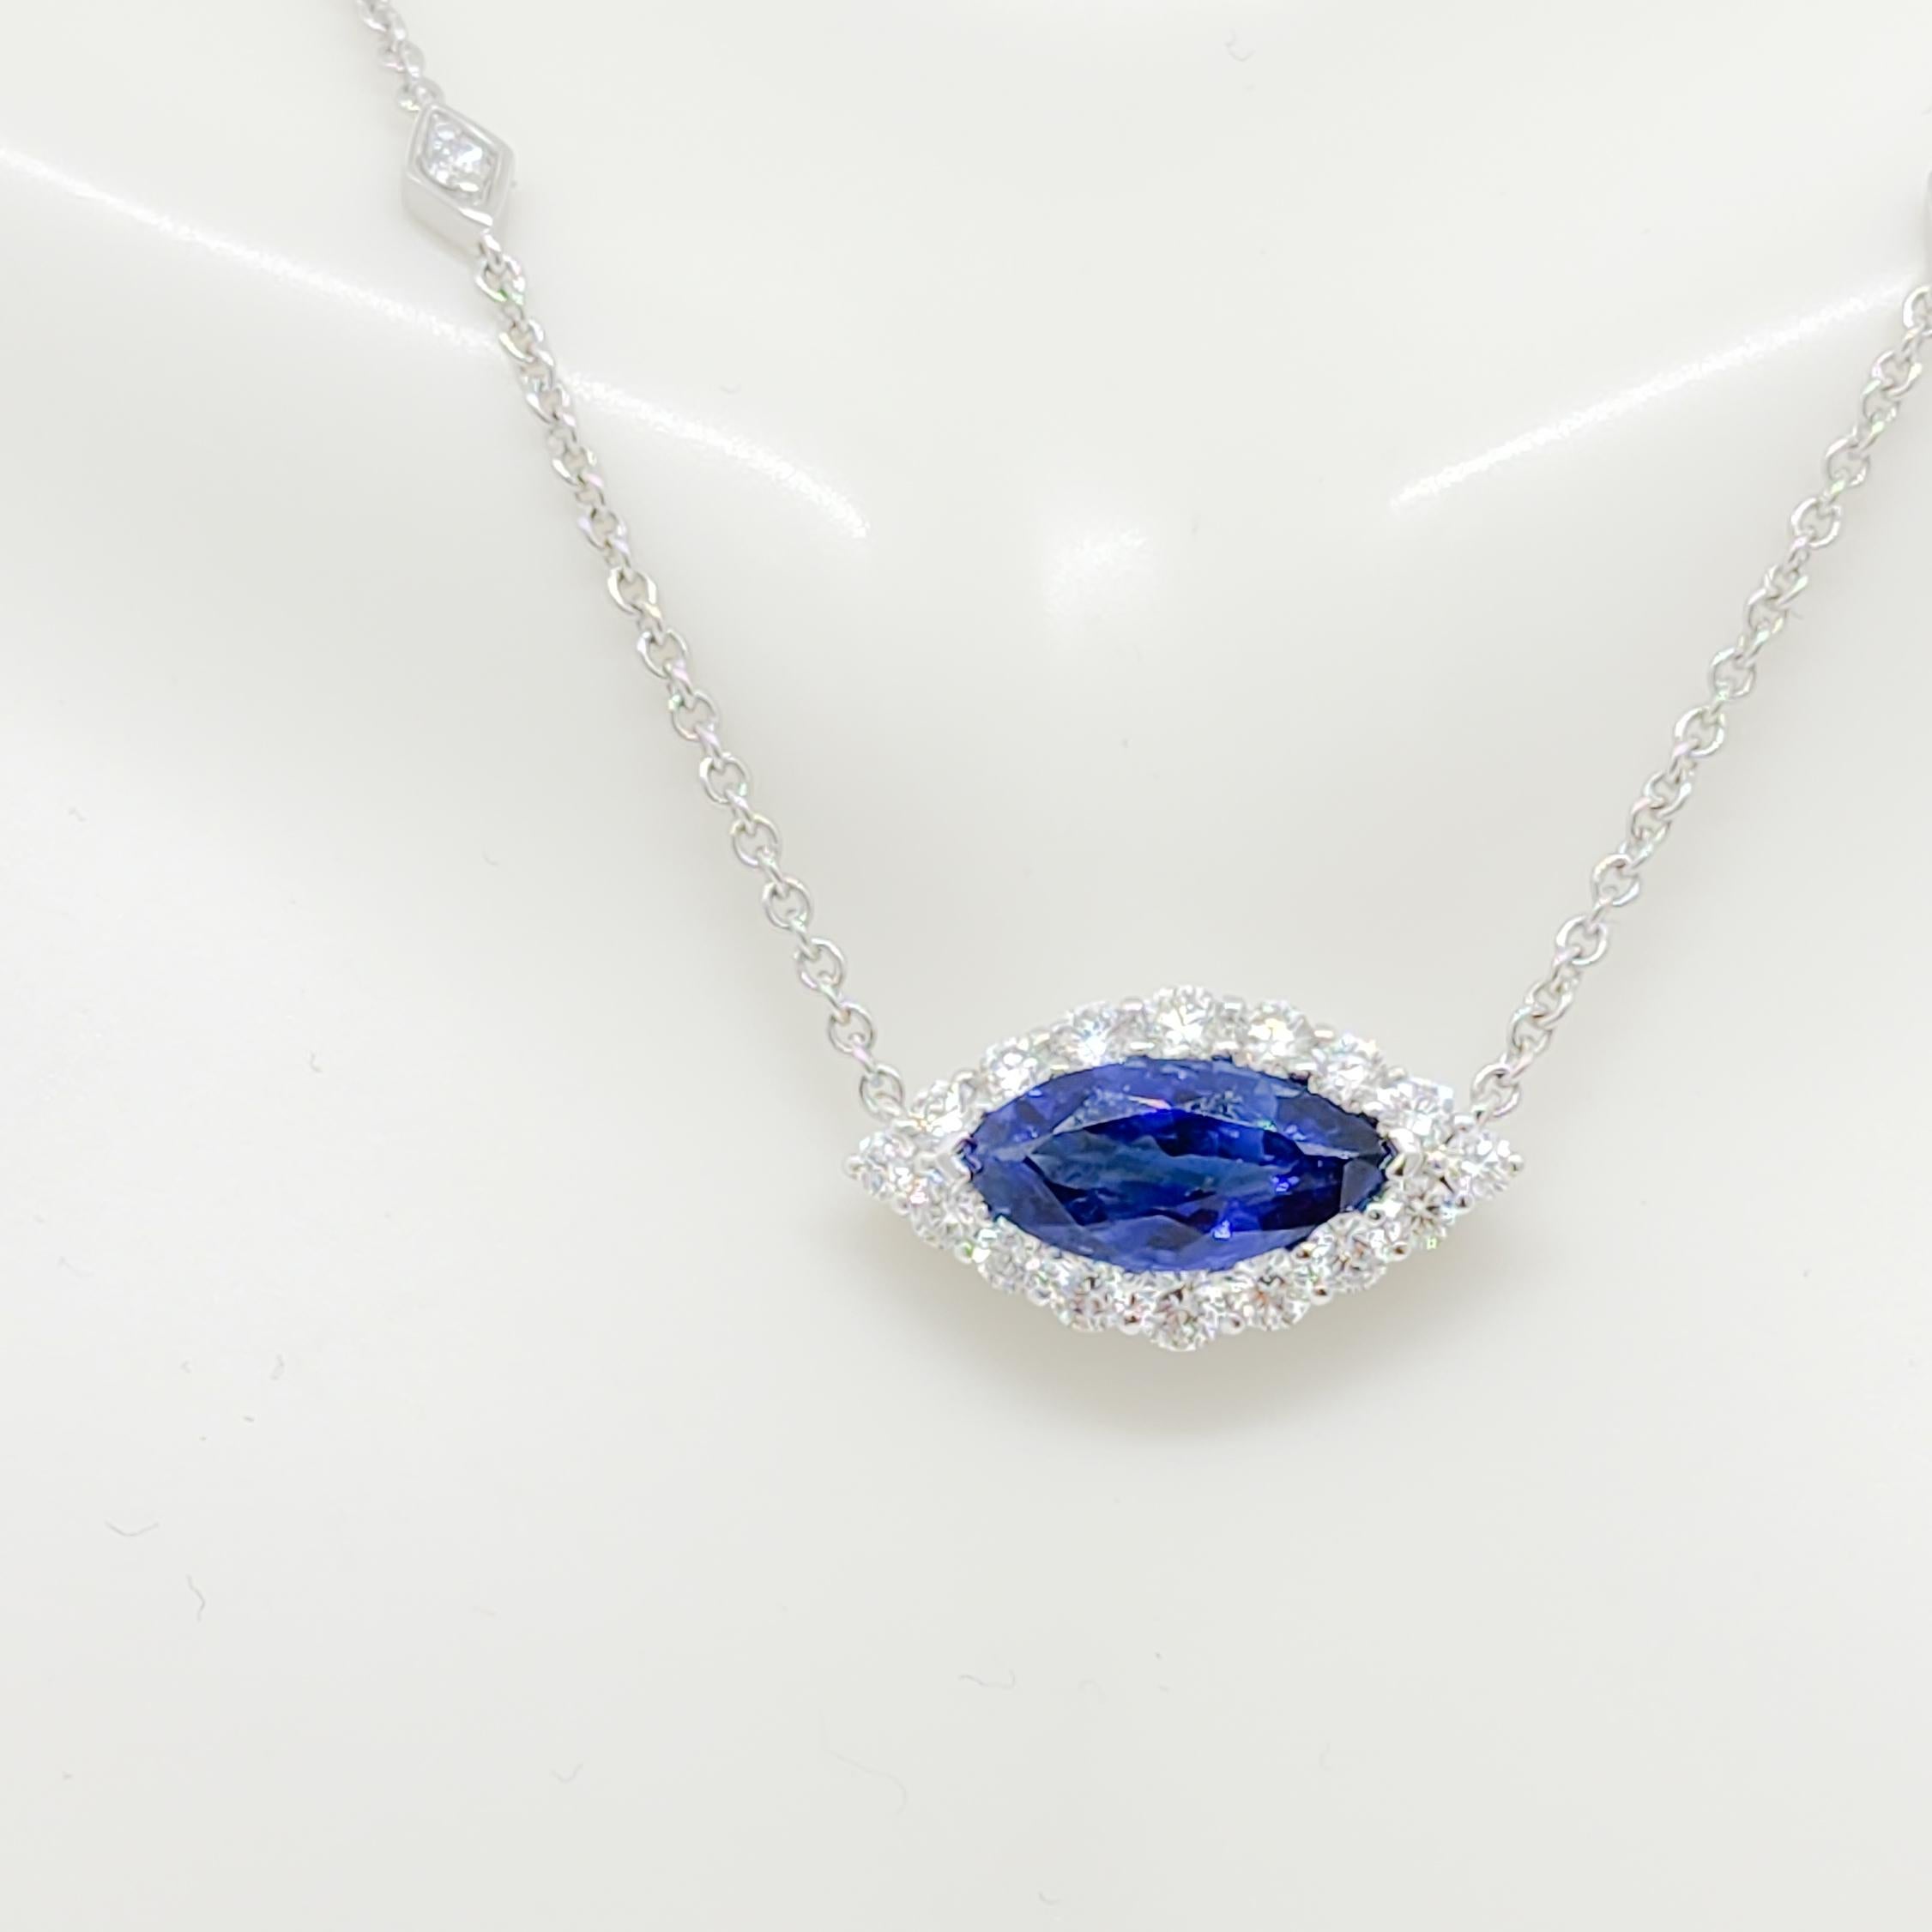 Magnifique saphir bleu marquise de 2,62 ct. avec 0,87 ct. de diamants blancs ronds et marquises de bonne qualité.  Fabriqué à la main en or blanc 18 carats.  Ce collier est une version amusante du style 